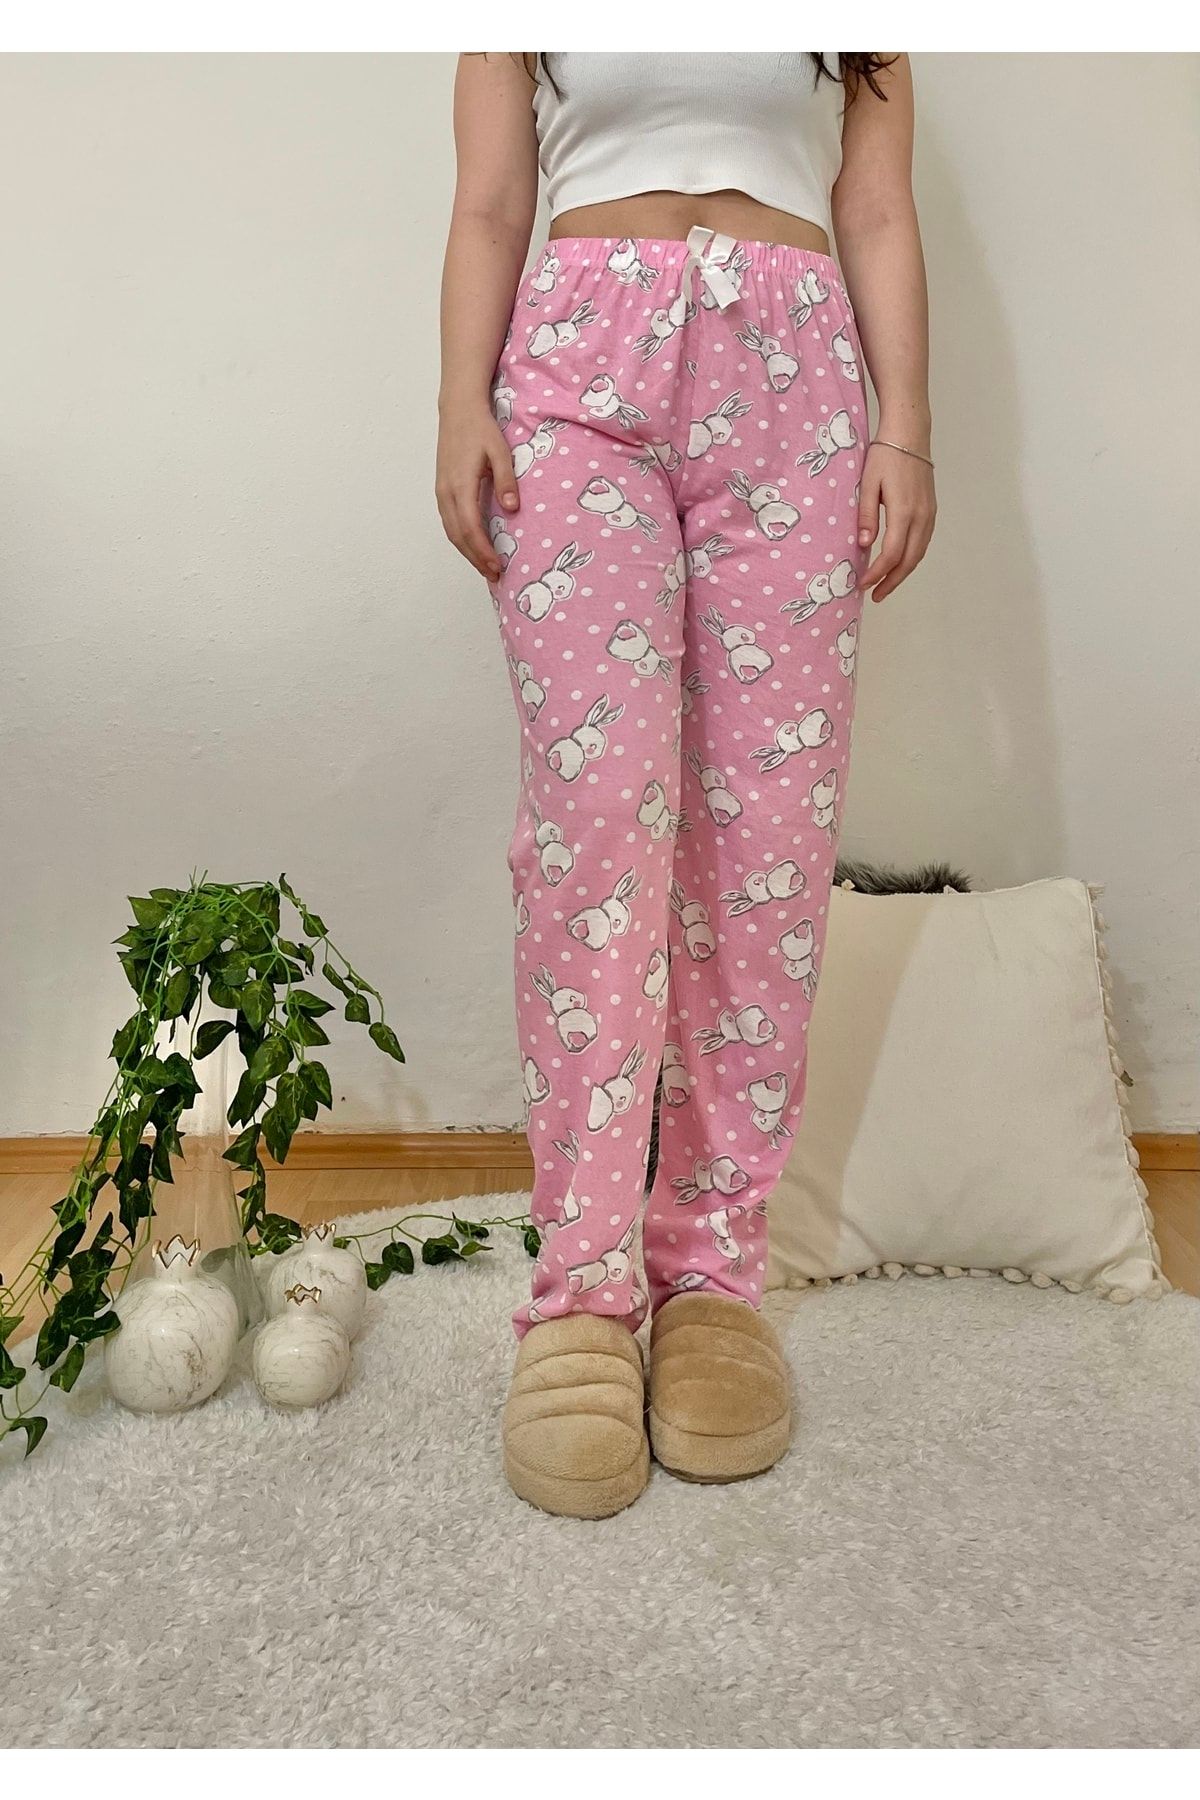 Betimoda Kadın Pijama Altı Kurdeleli Büyük Tavşan Pembe